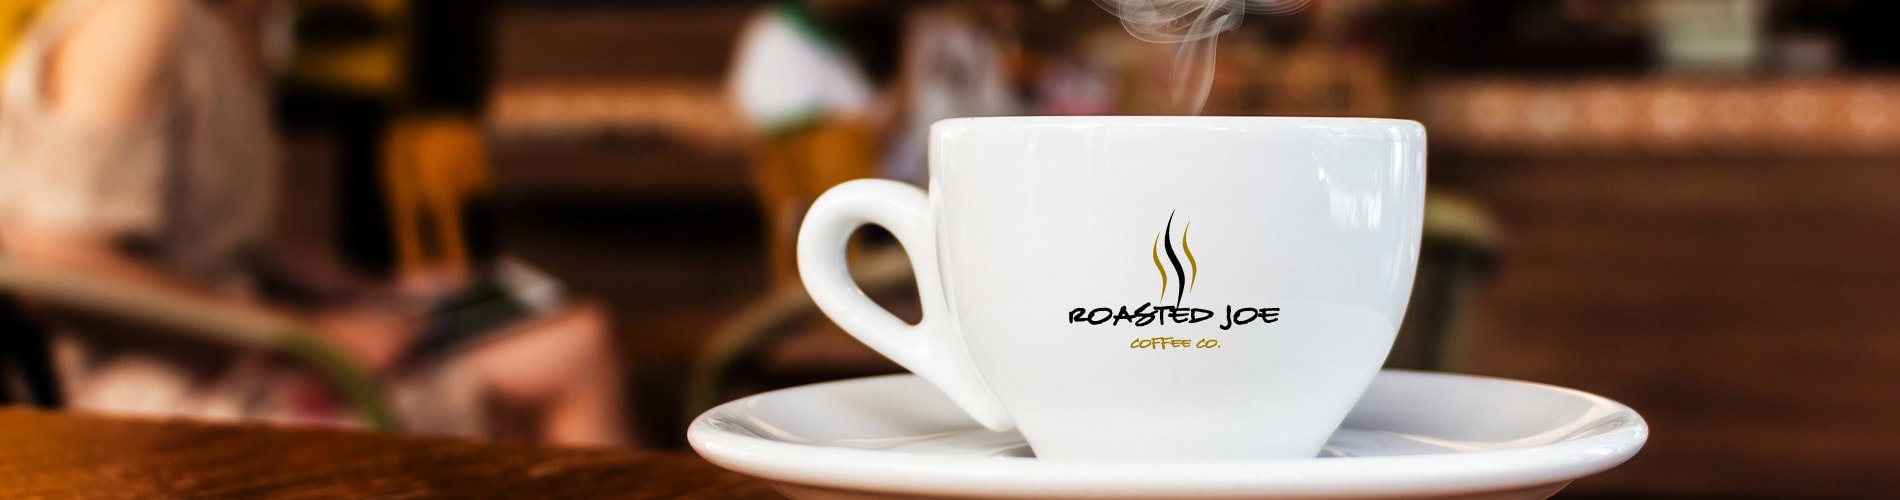 Roasted Joe Coffee Co.